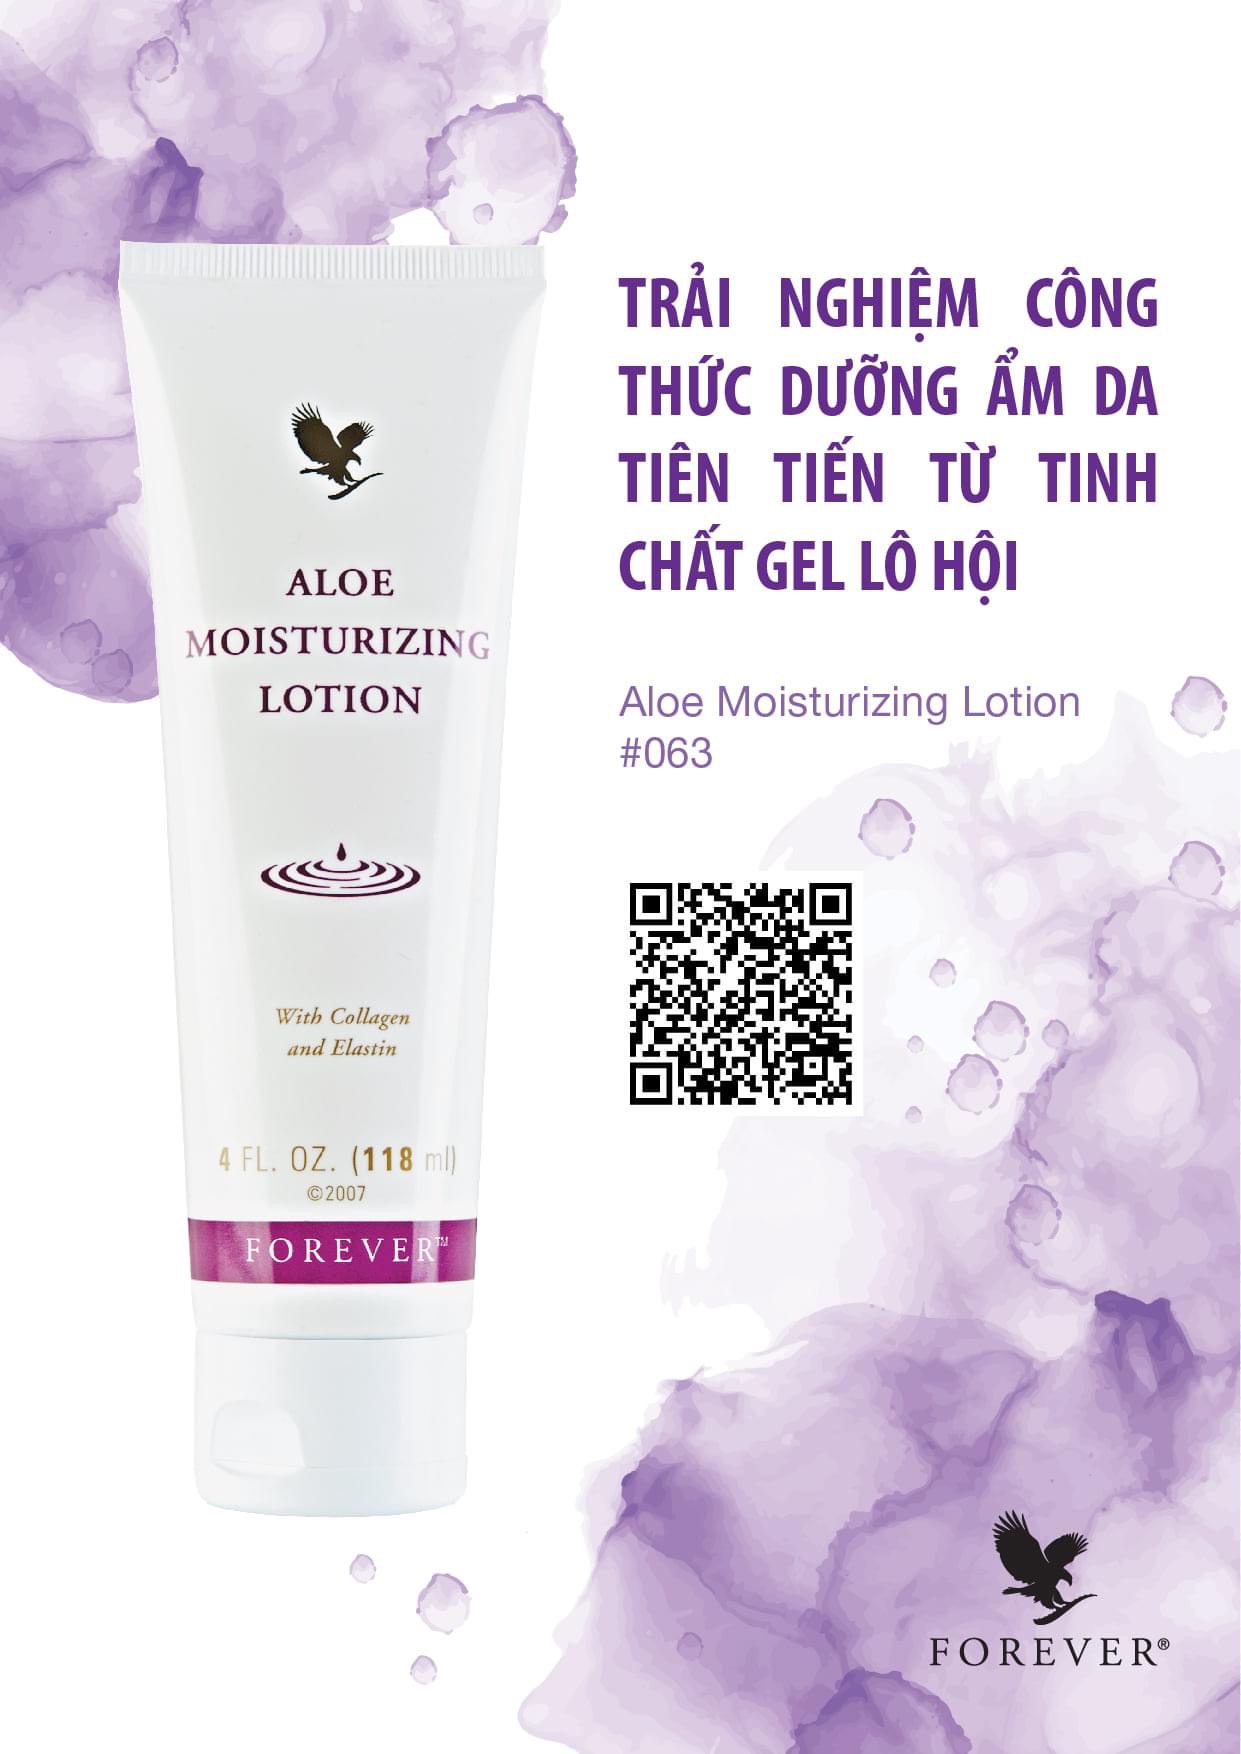 Aloe Moisturizing Lotion #063 Flp : Trải Nghiệm Công Thức Dưỡng Ẩm Da Tiến Tiến Từ Tinh Chất Gel Lô Hội